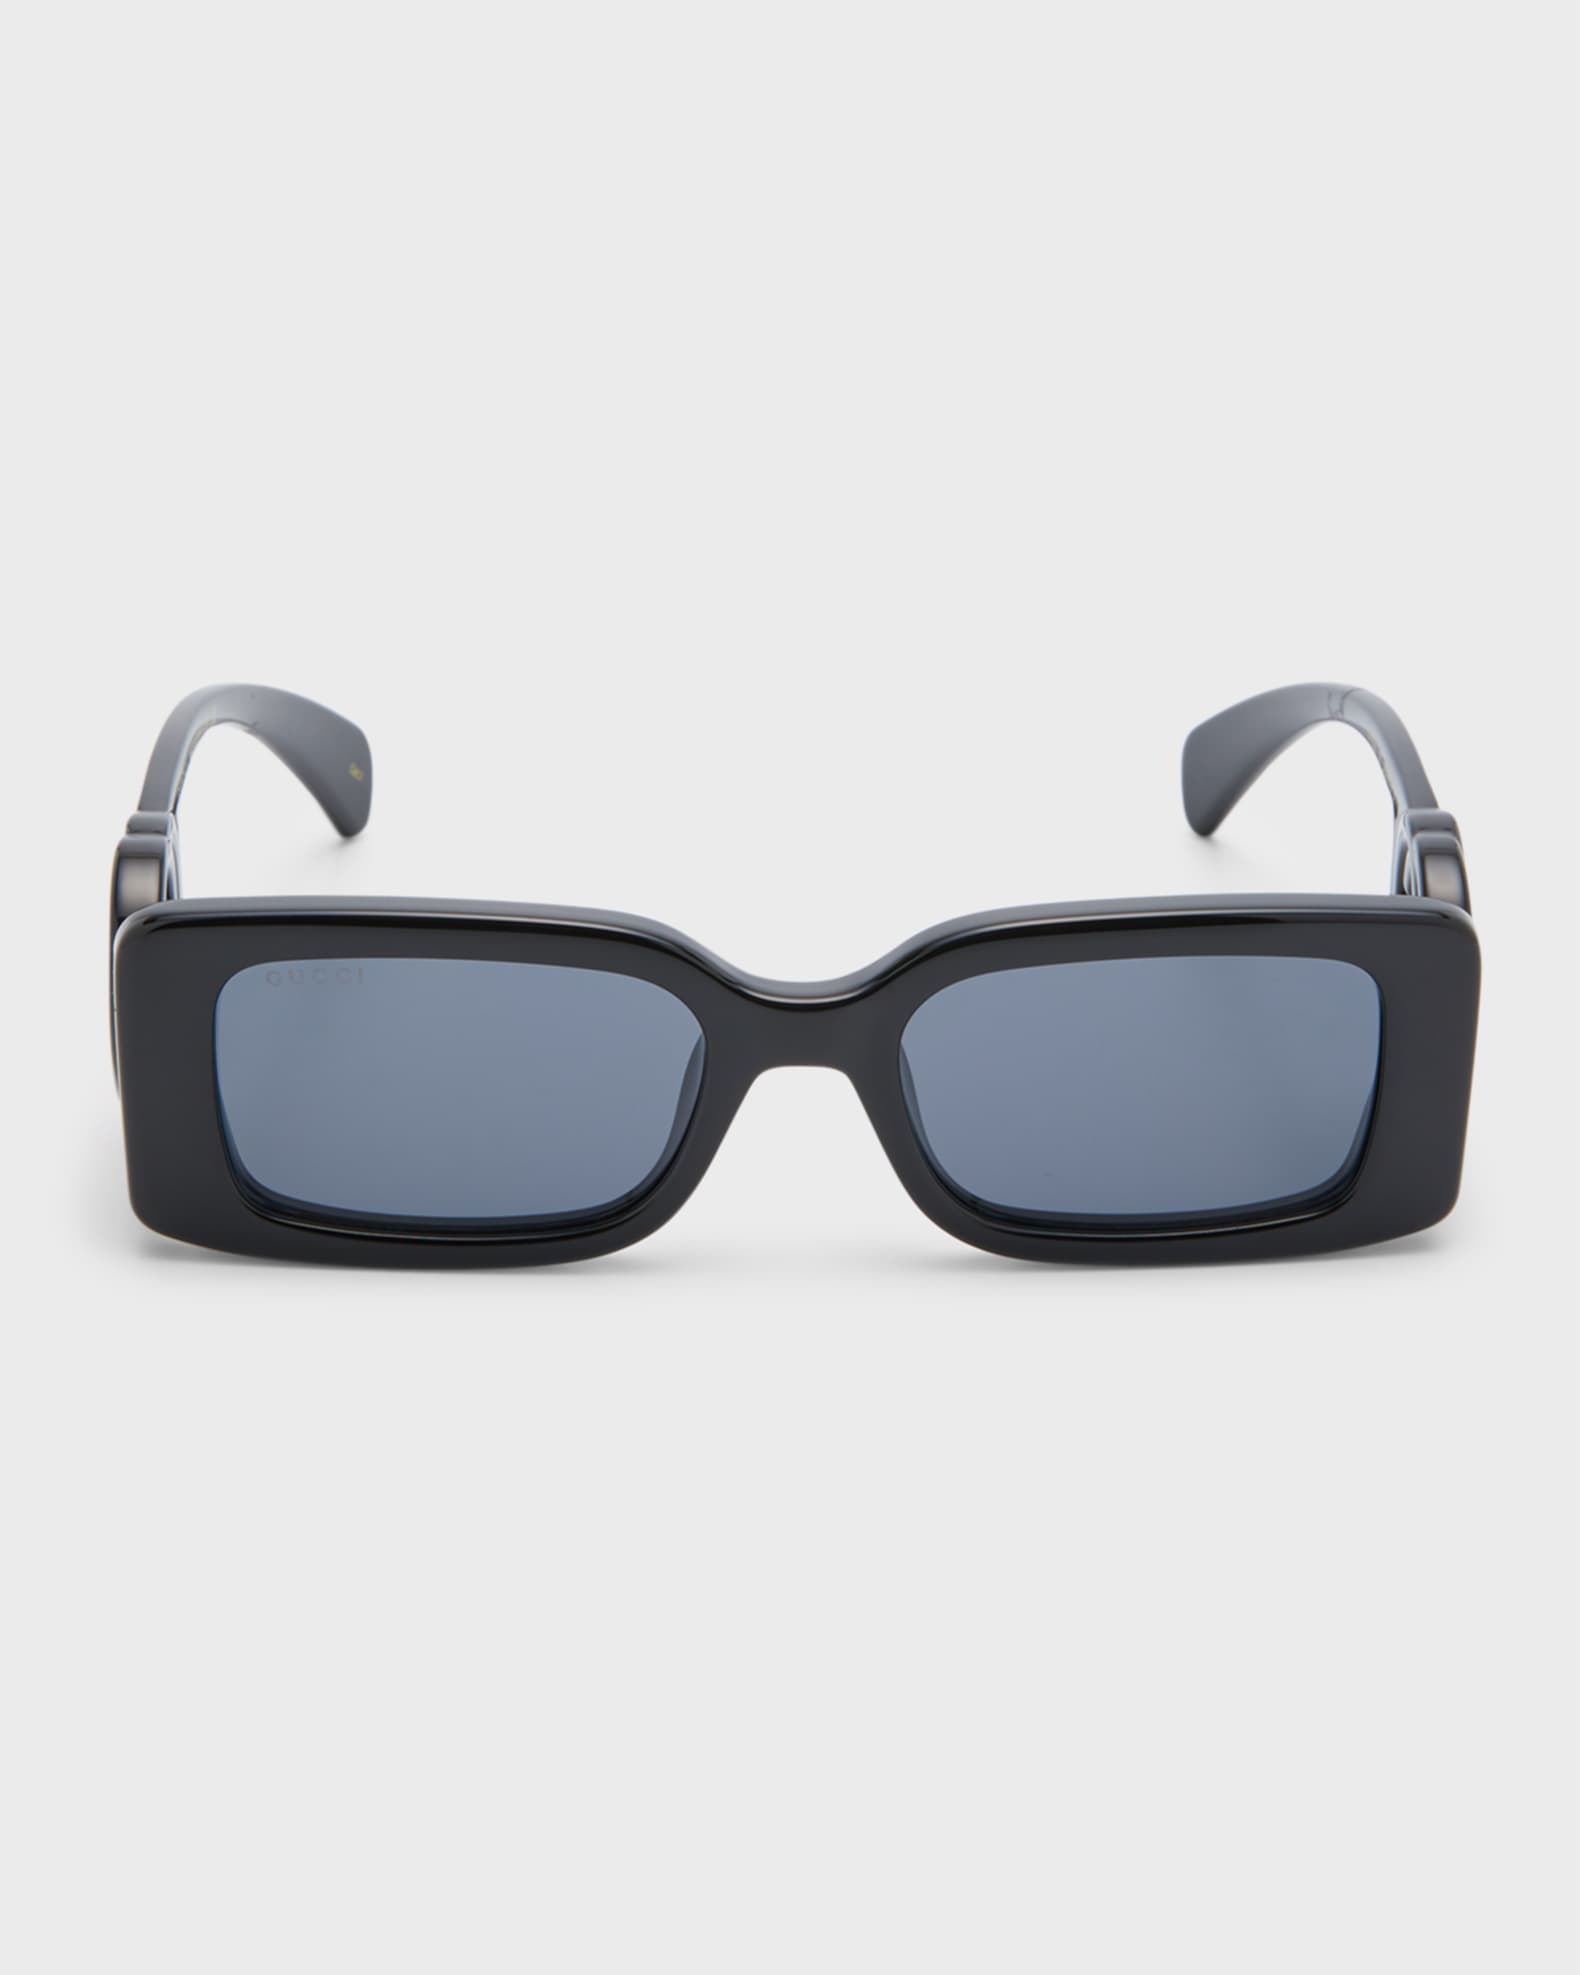 Gucci Monochrome GG Rectangle Acetate Sunglasses | Neiman Marcus